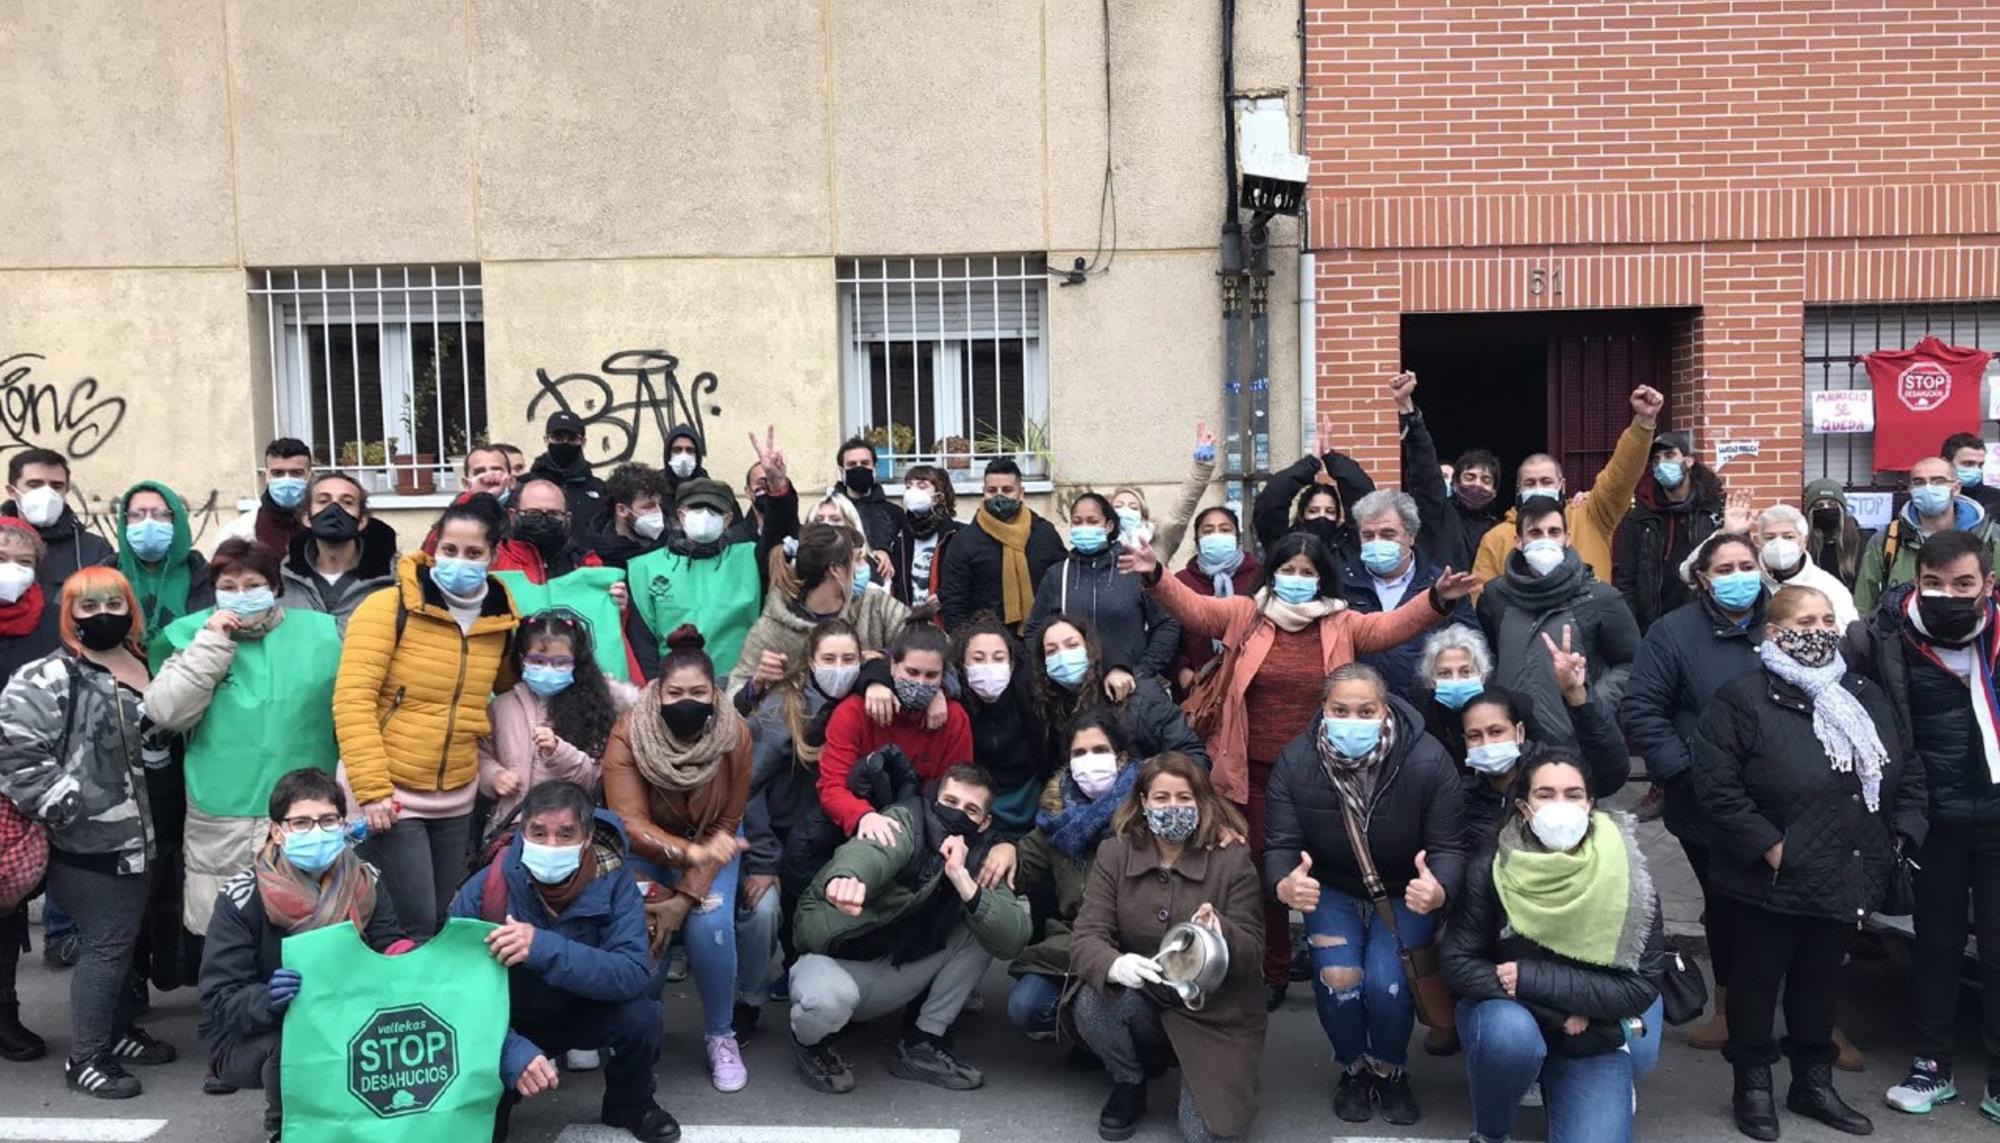 Militantes del movimiento por la vivienda parando un desahucio en el bloque Clara Campoamor. / Sindicato de Vivienda de Carabanchel